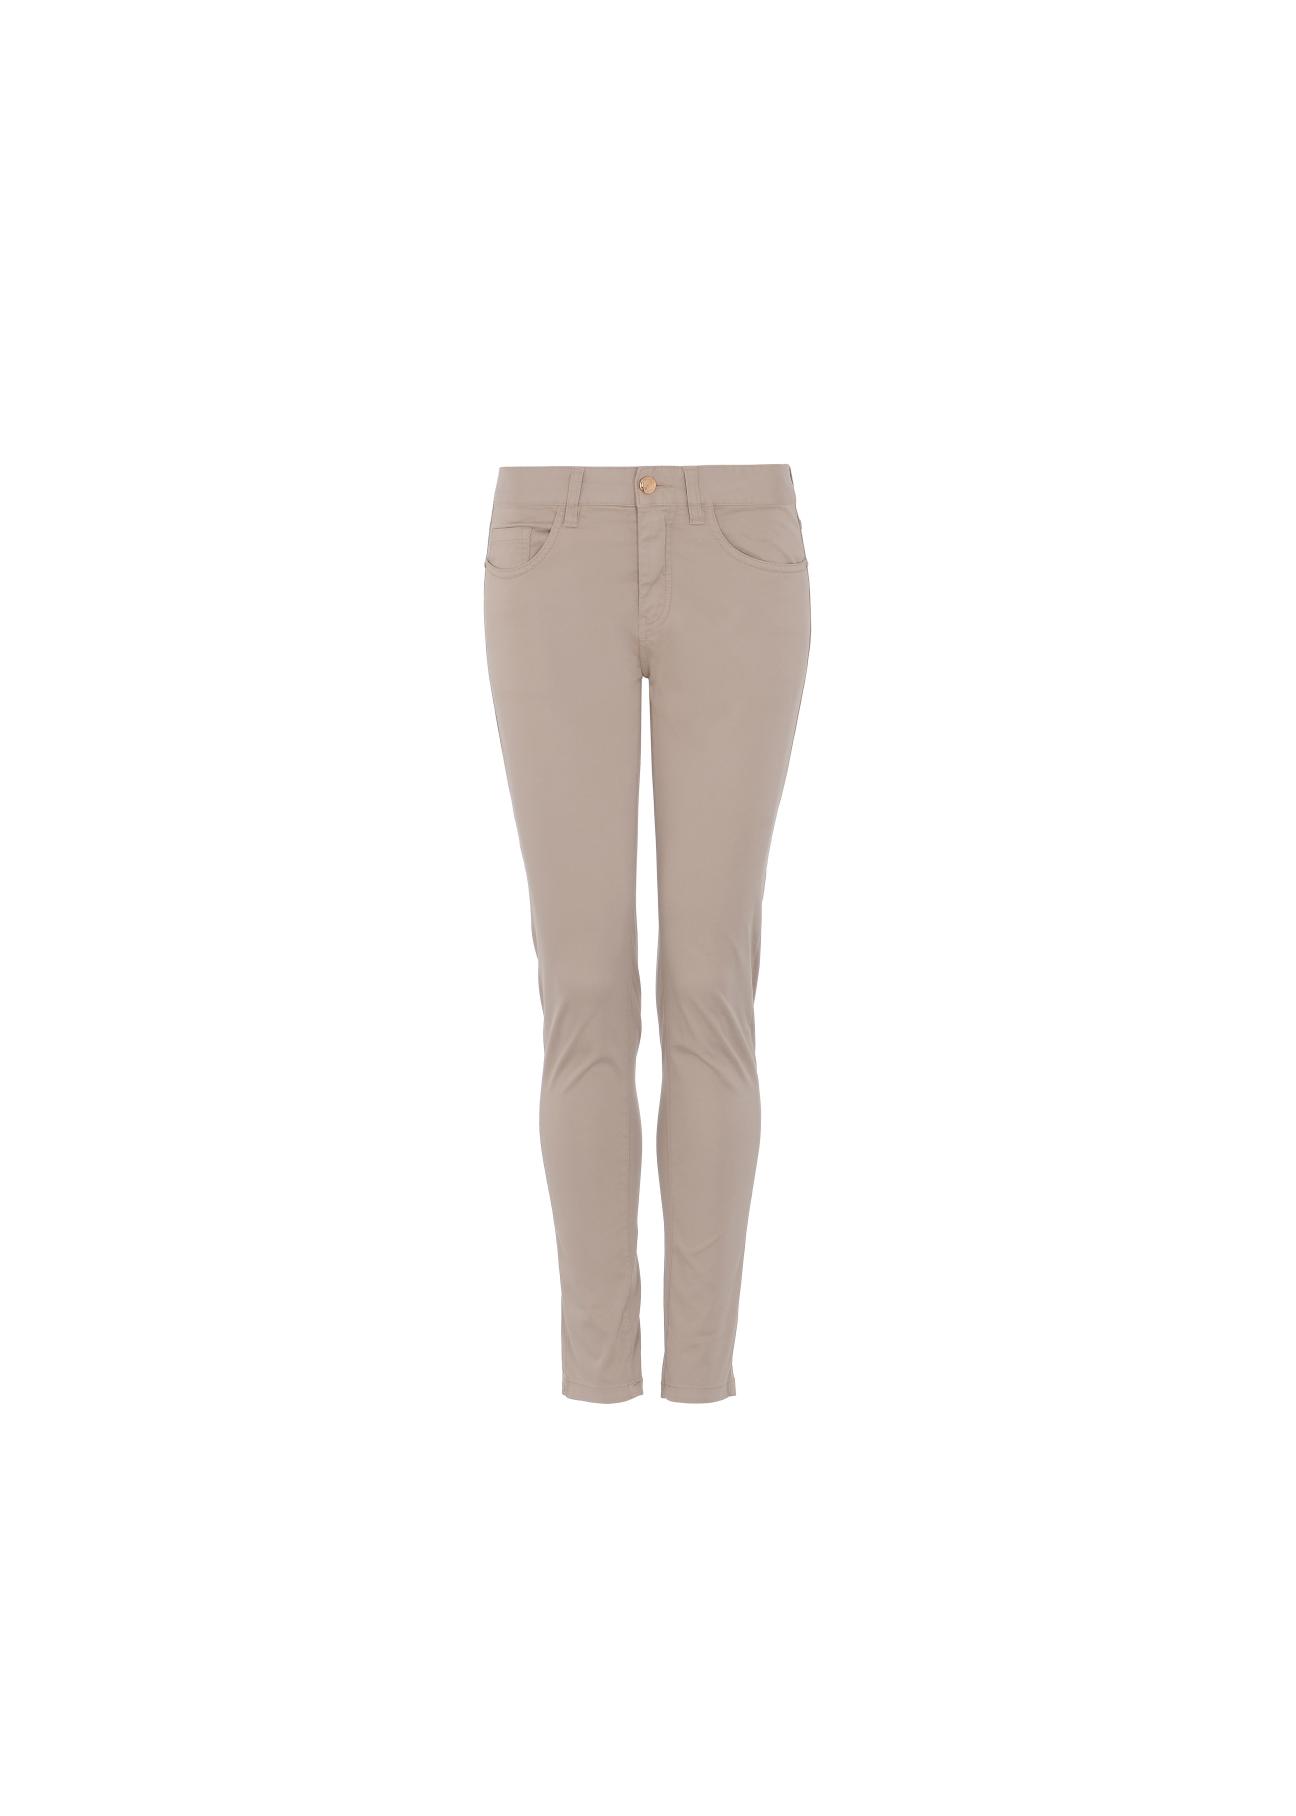 Beżowe spodnie skinny damskie SPODT-0026-81(W21)